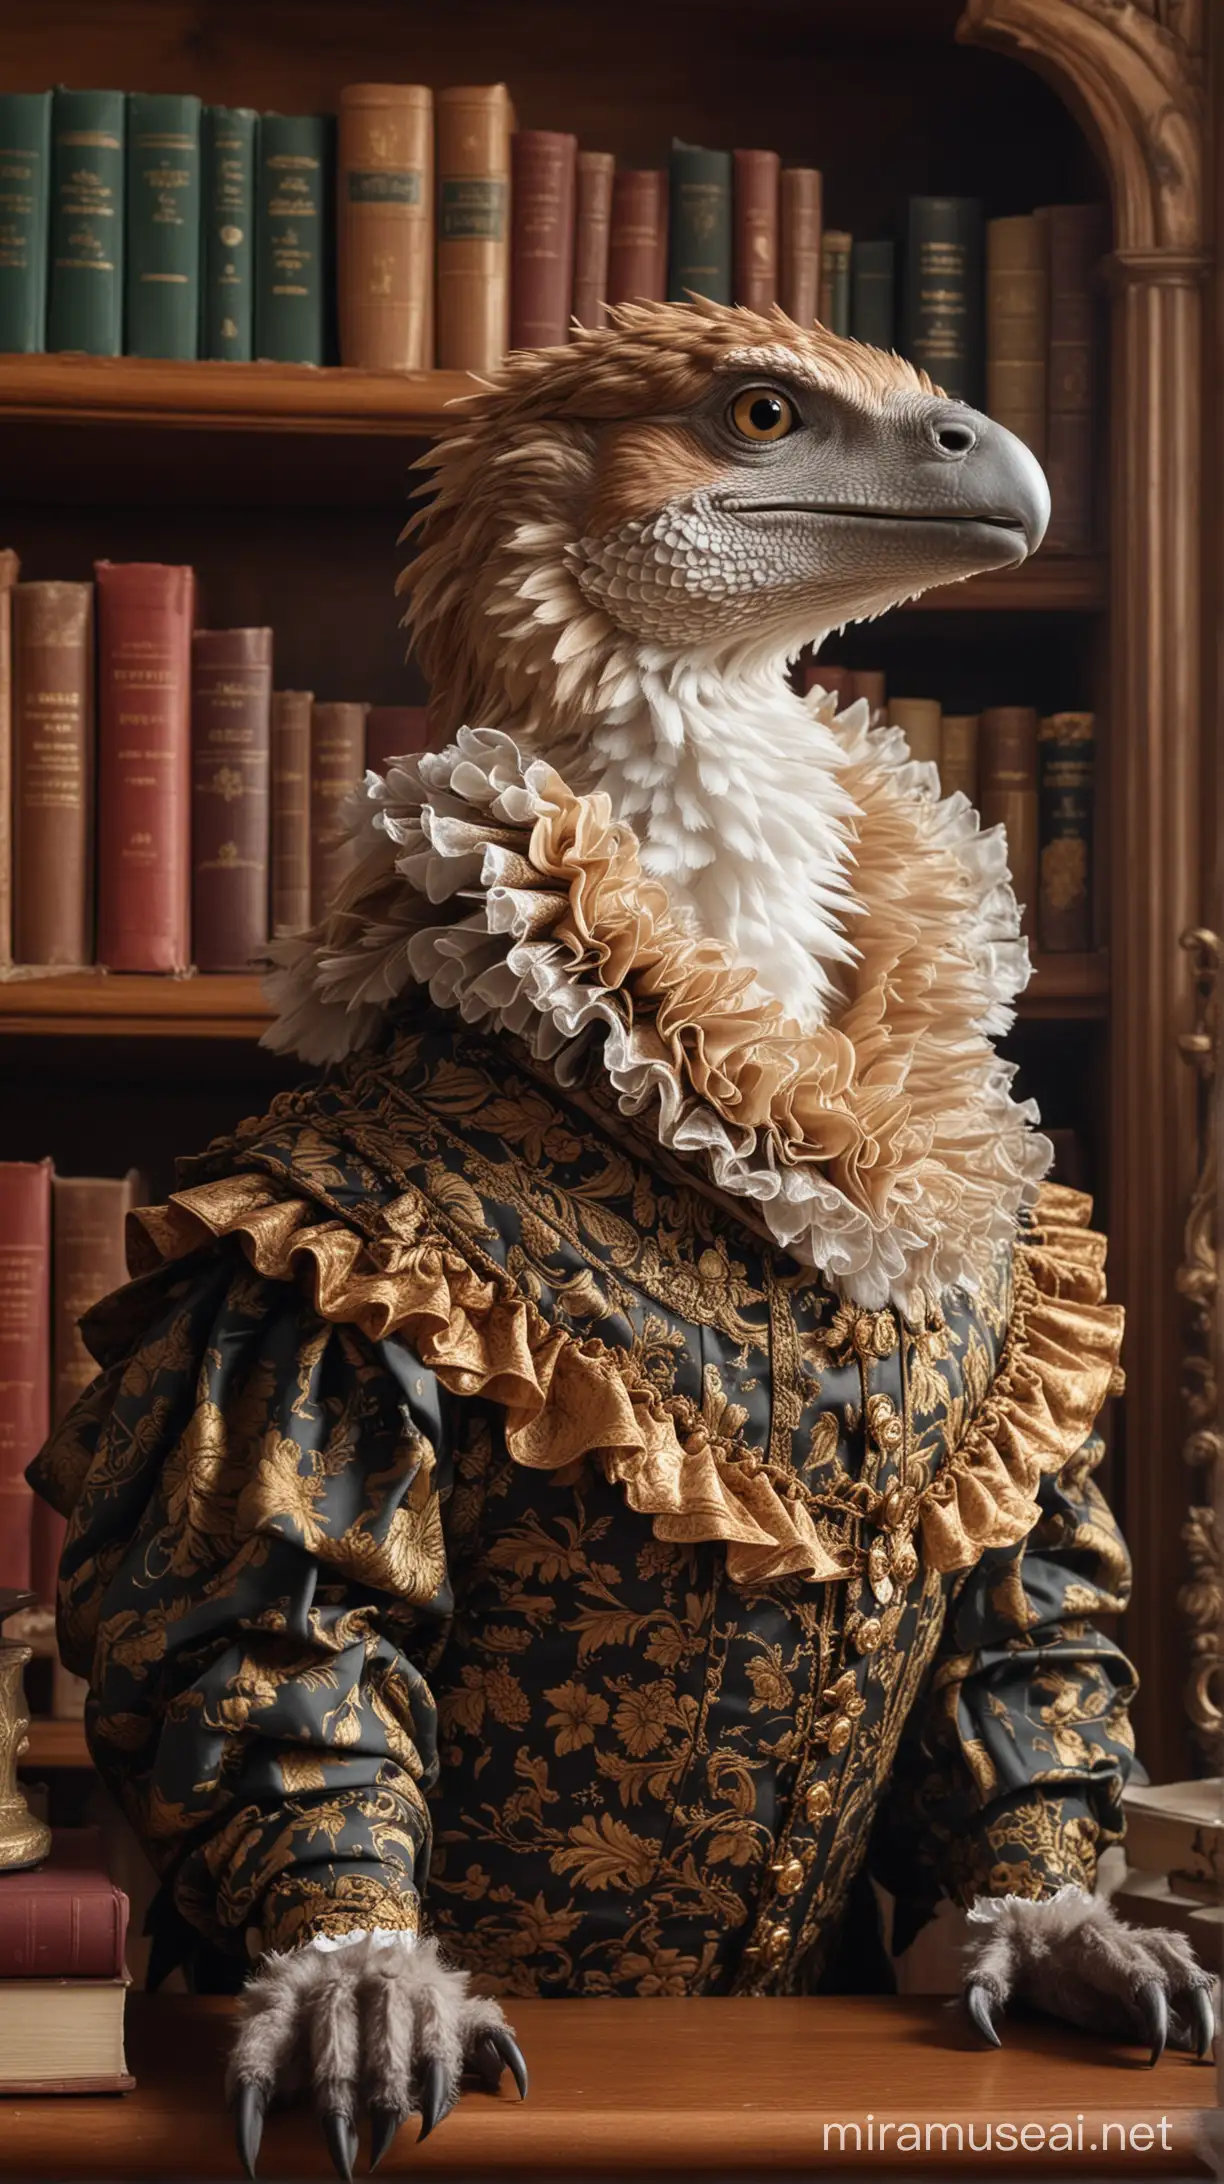 Ein Raptor in barocker kleidung mit breiter halskrause vor einem bücherregal